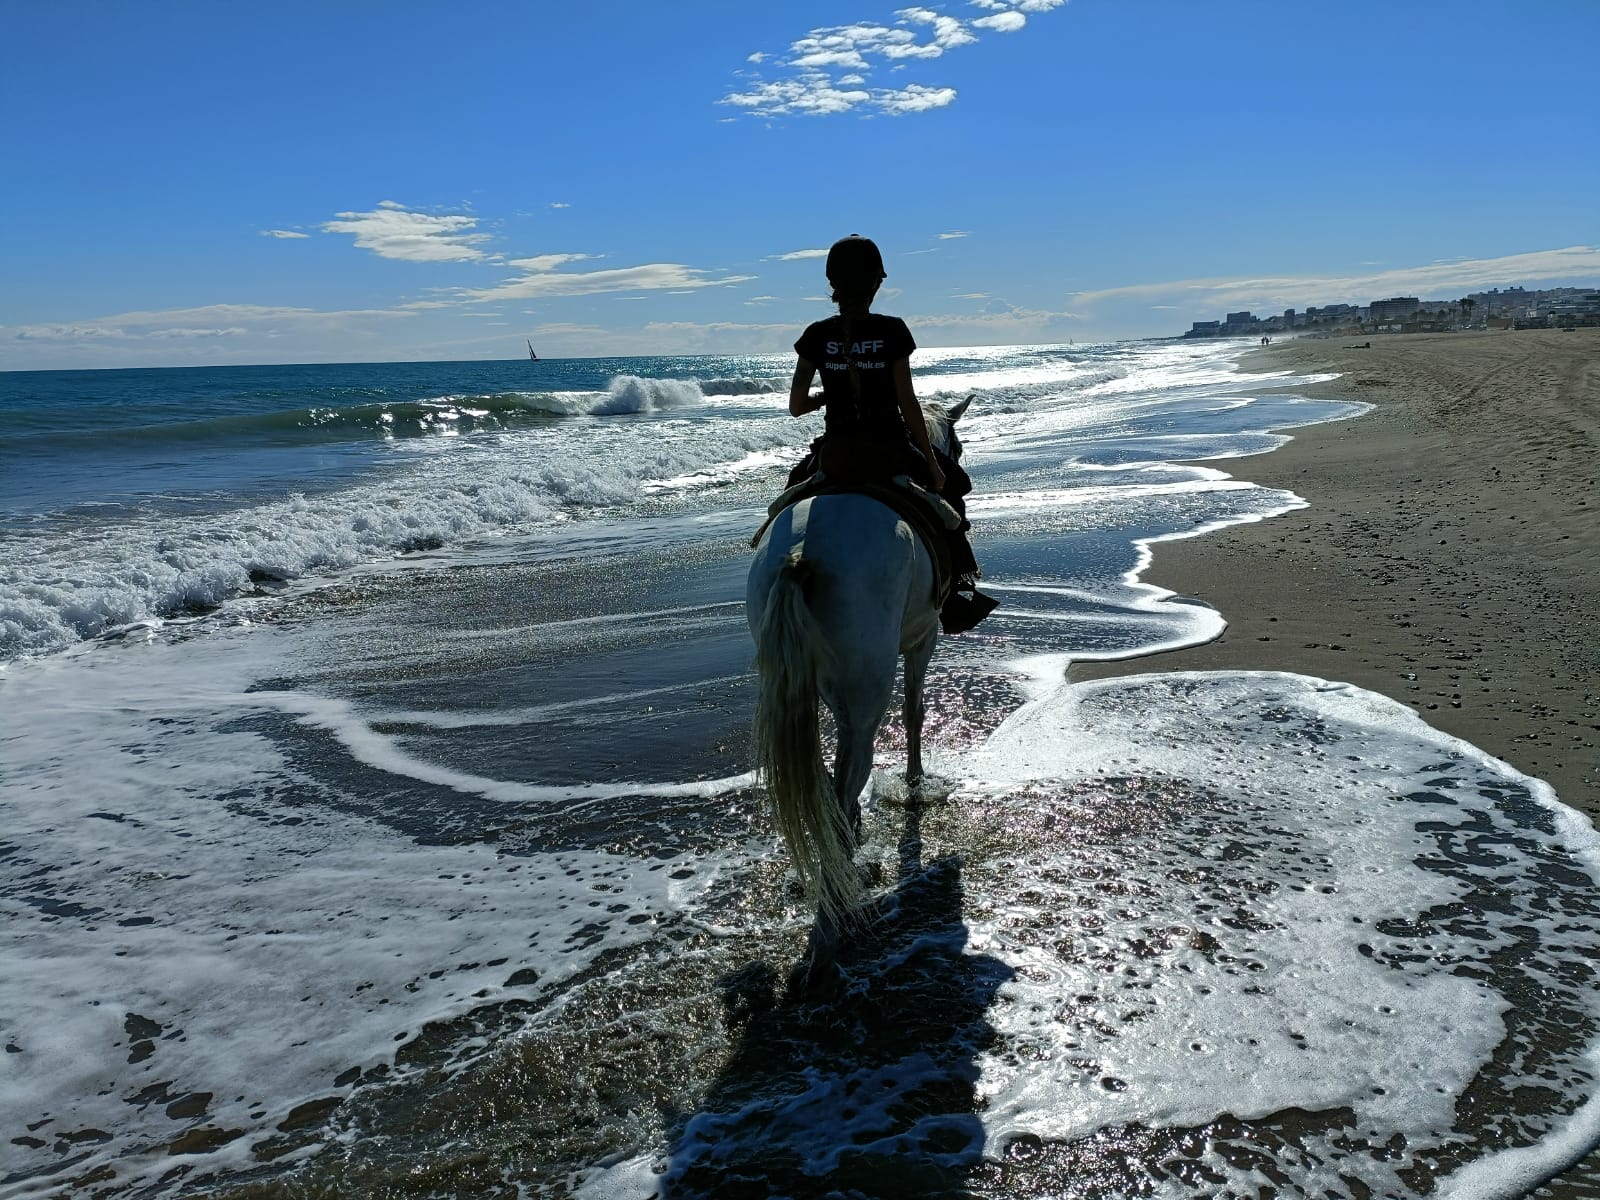 balades a cheval sur la plage torremolinos malaga